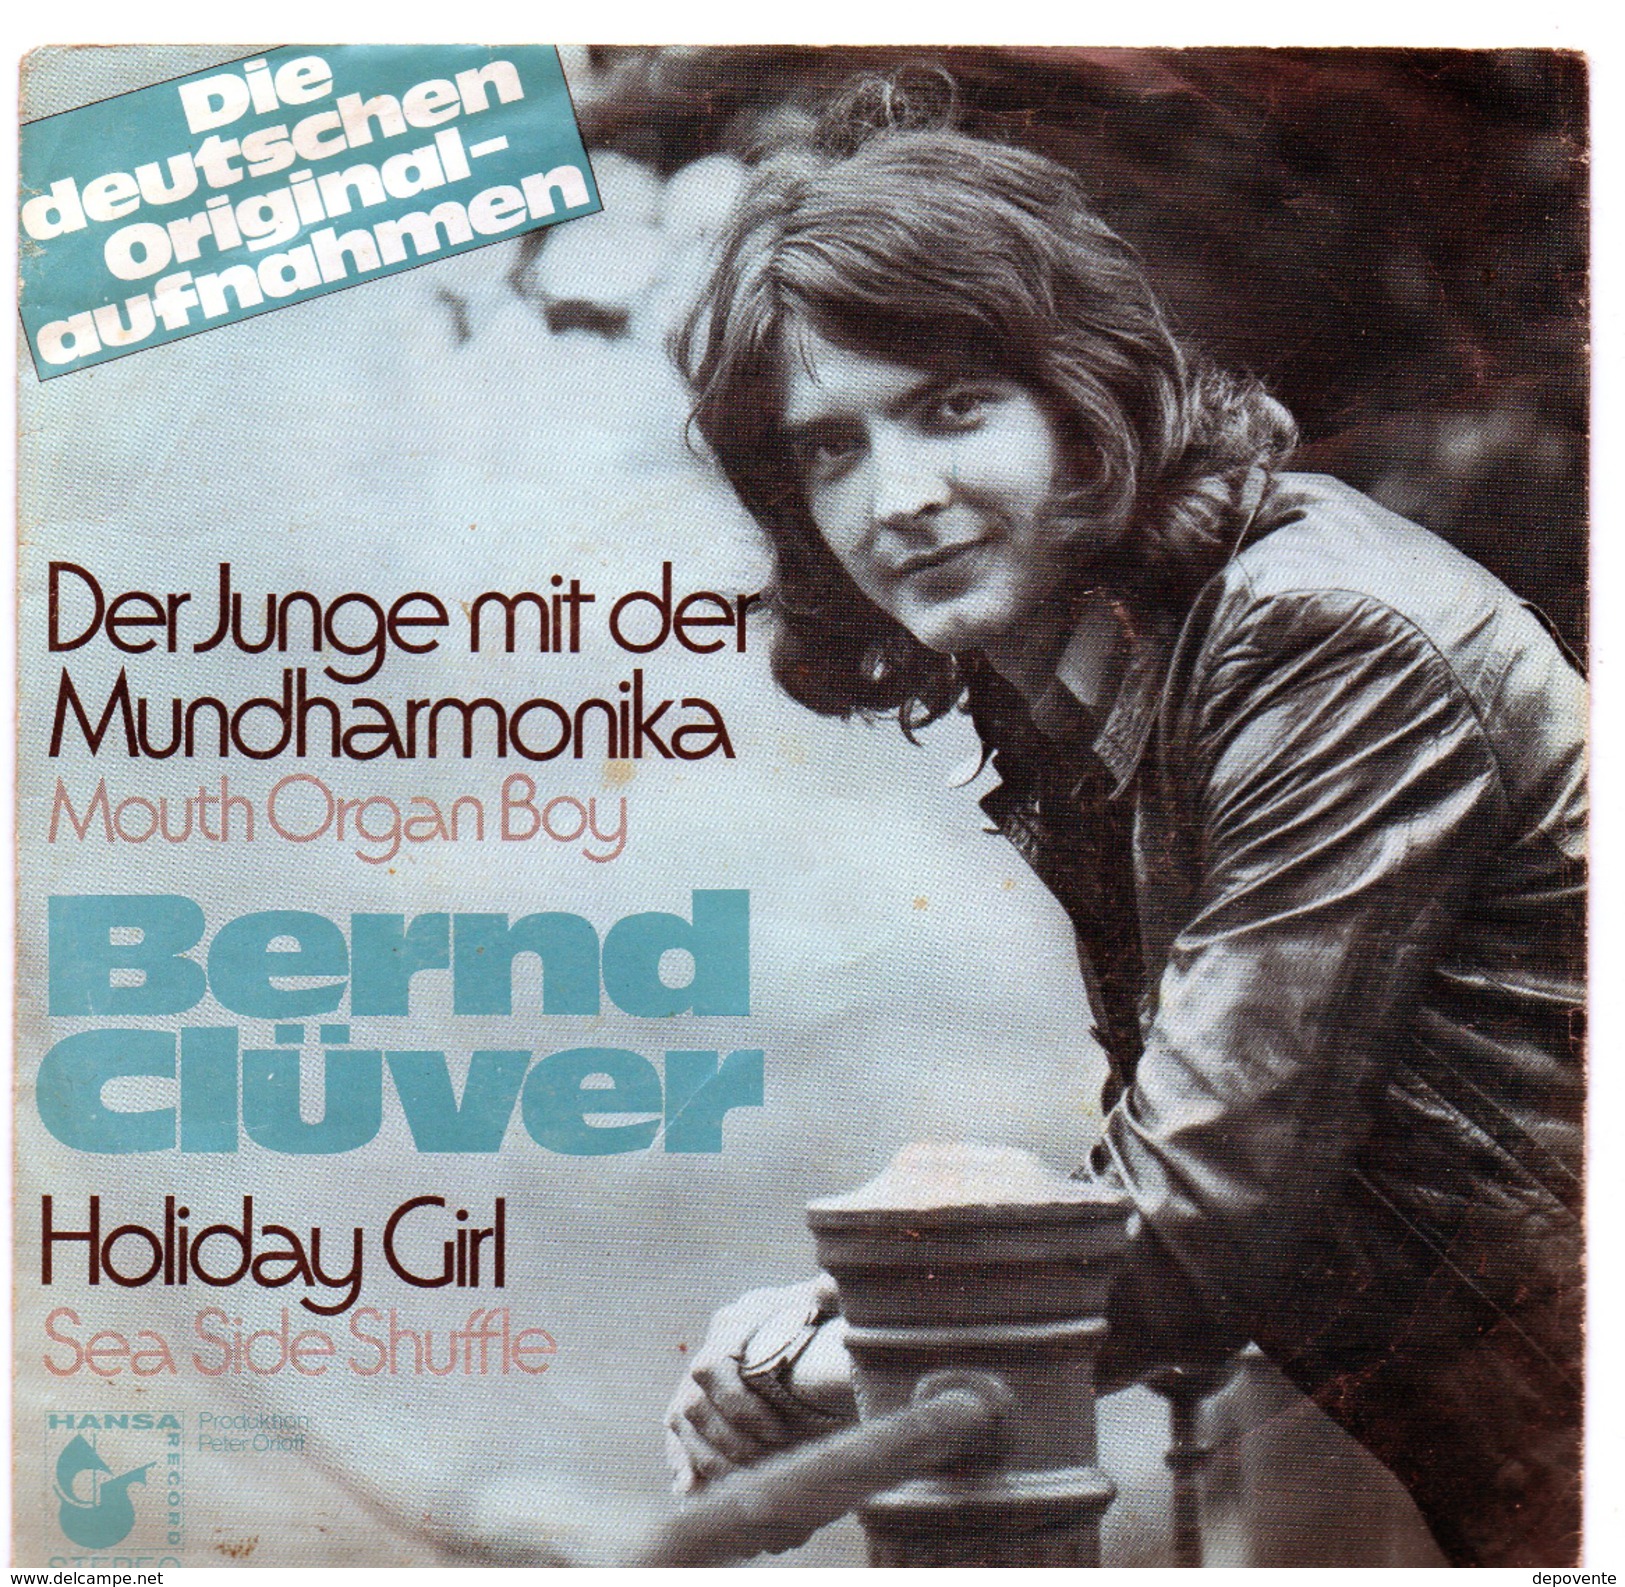 45T : BERND CLÜVER - DER JUNGE MIT DER MUNDHARMONICA - Other - German Music